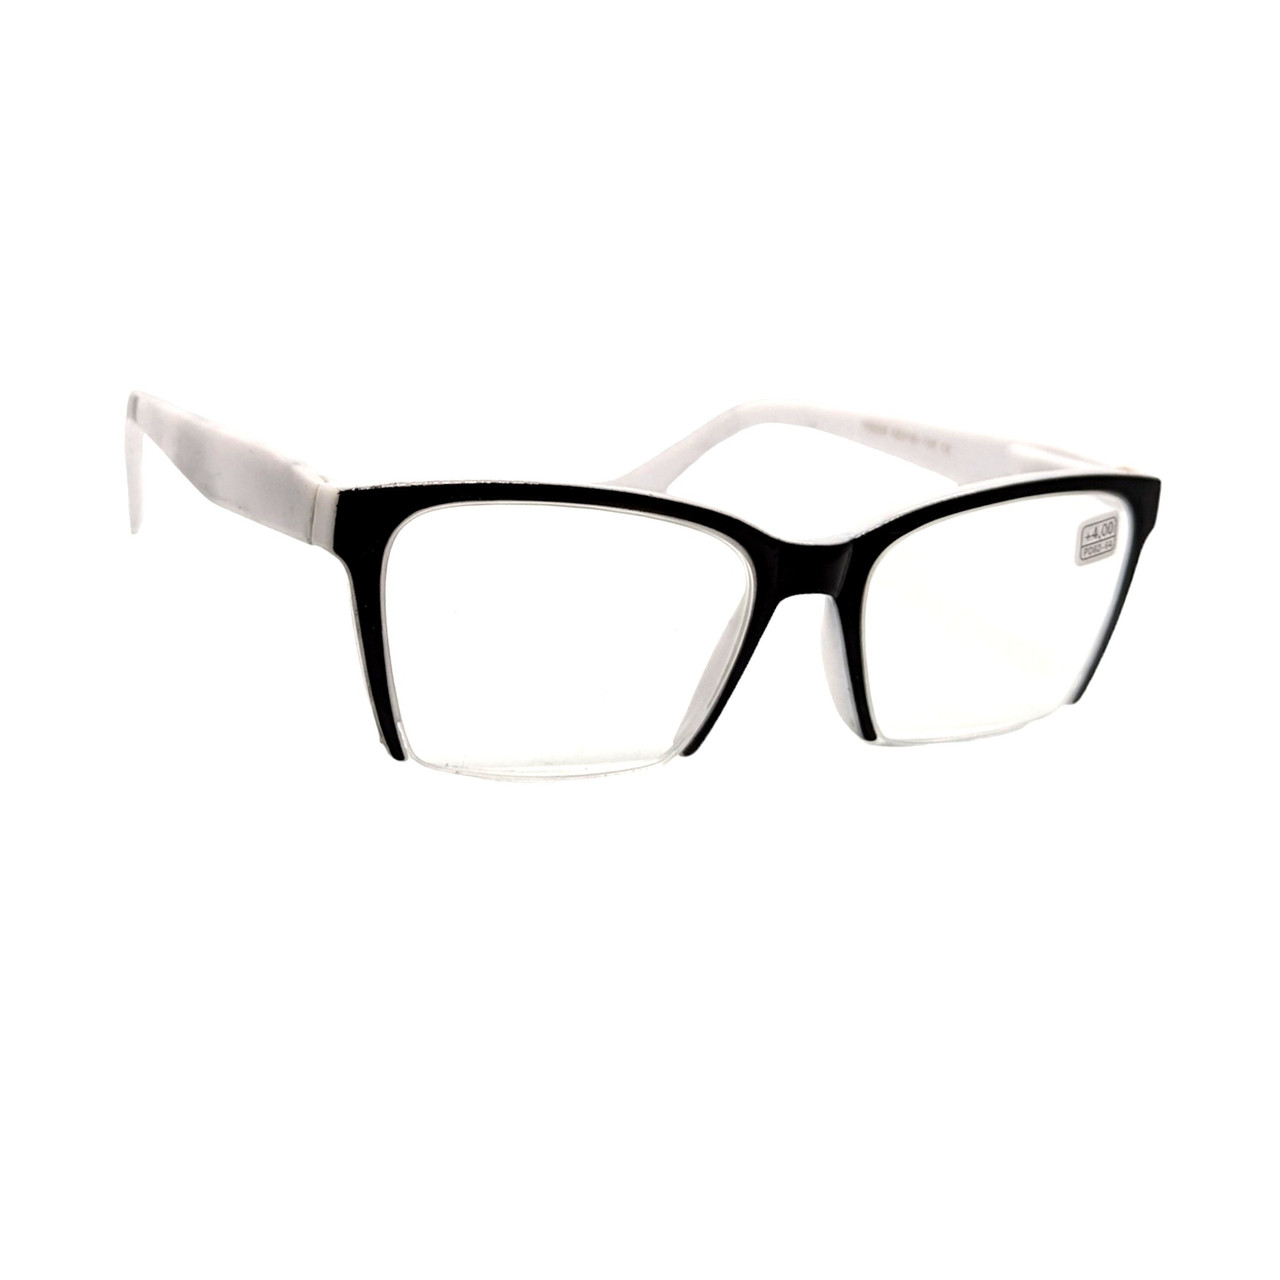 Універсальні окуляри з білою лінзою 225 чорно-білі  БІЛІ